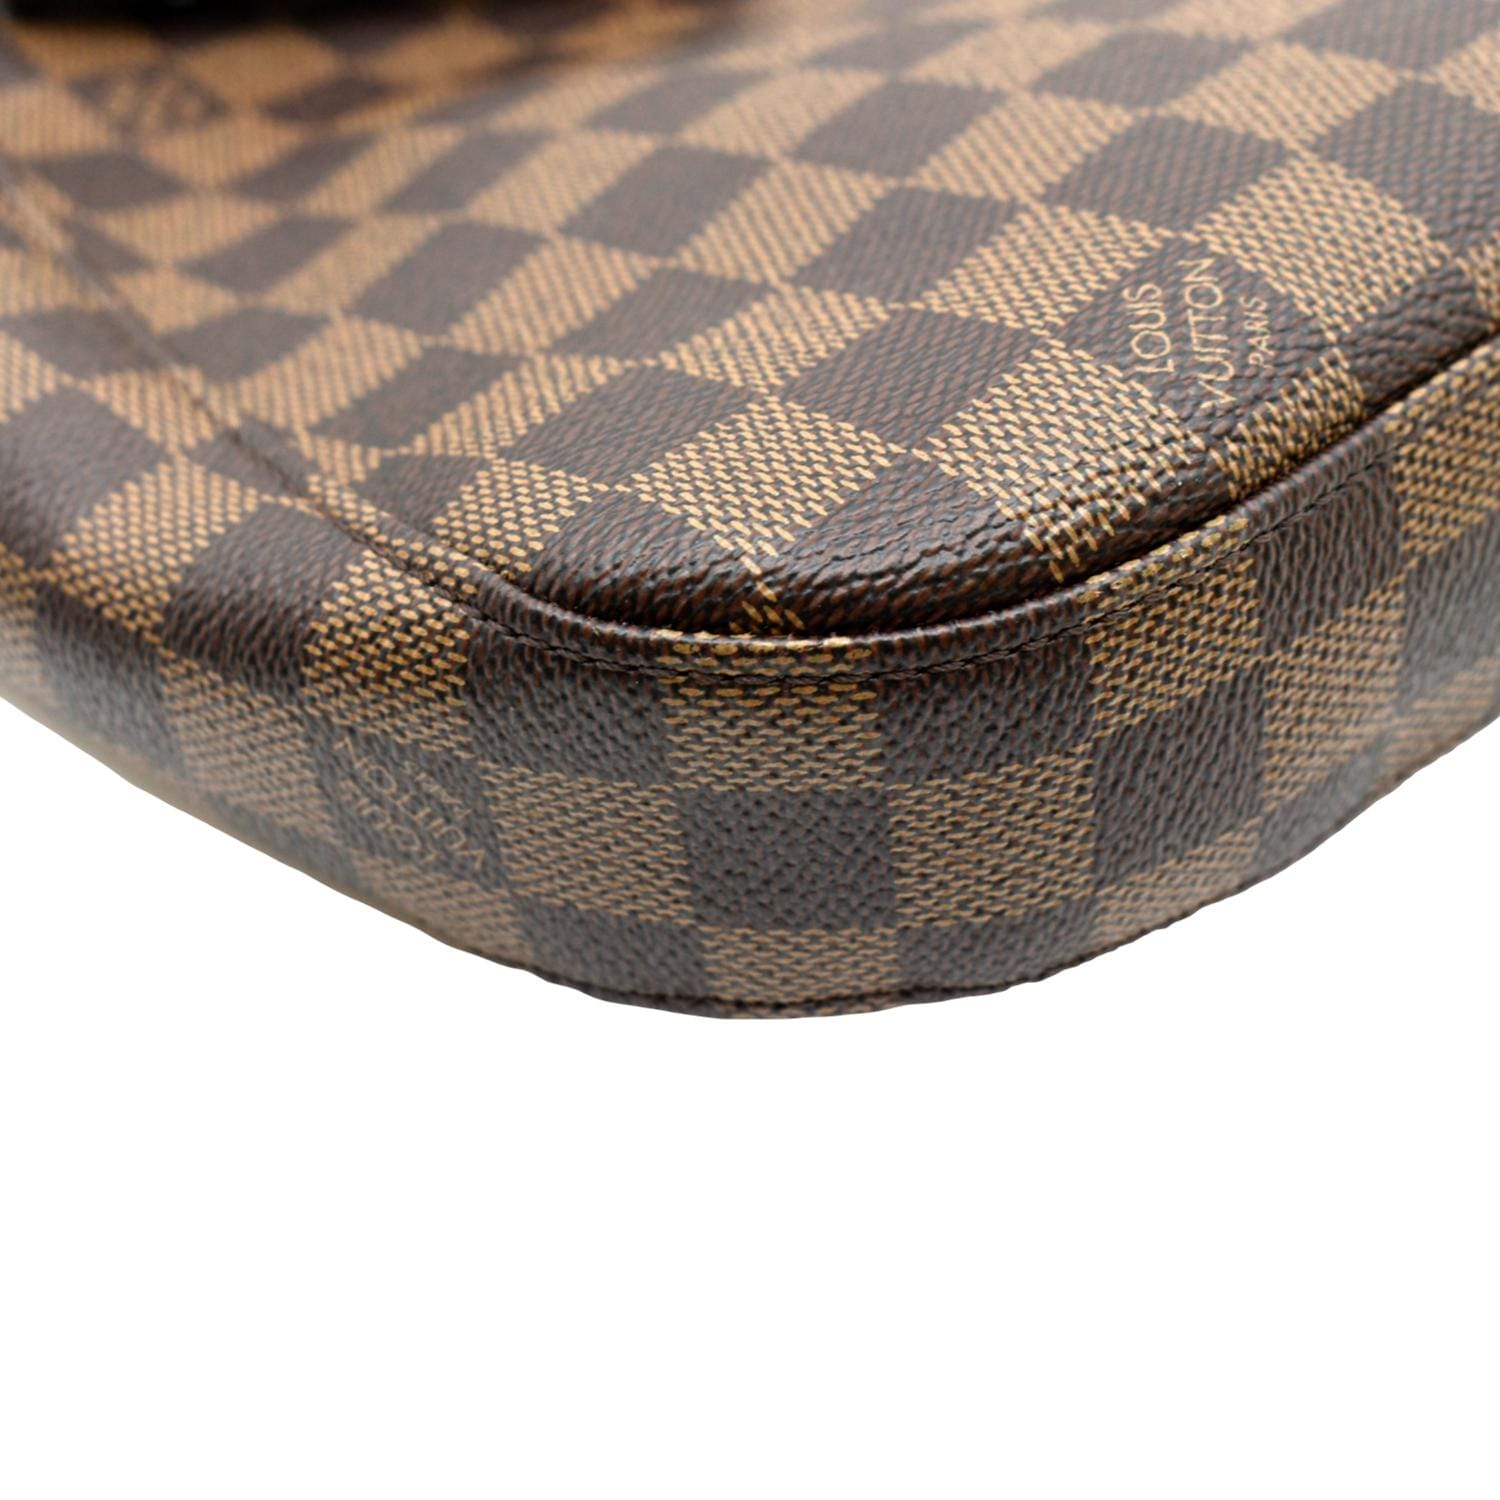 Authentic Louis Vuitton Damier Ebene South Bank Besace Bag